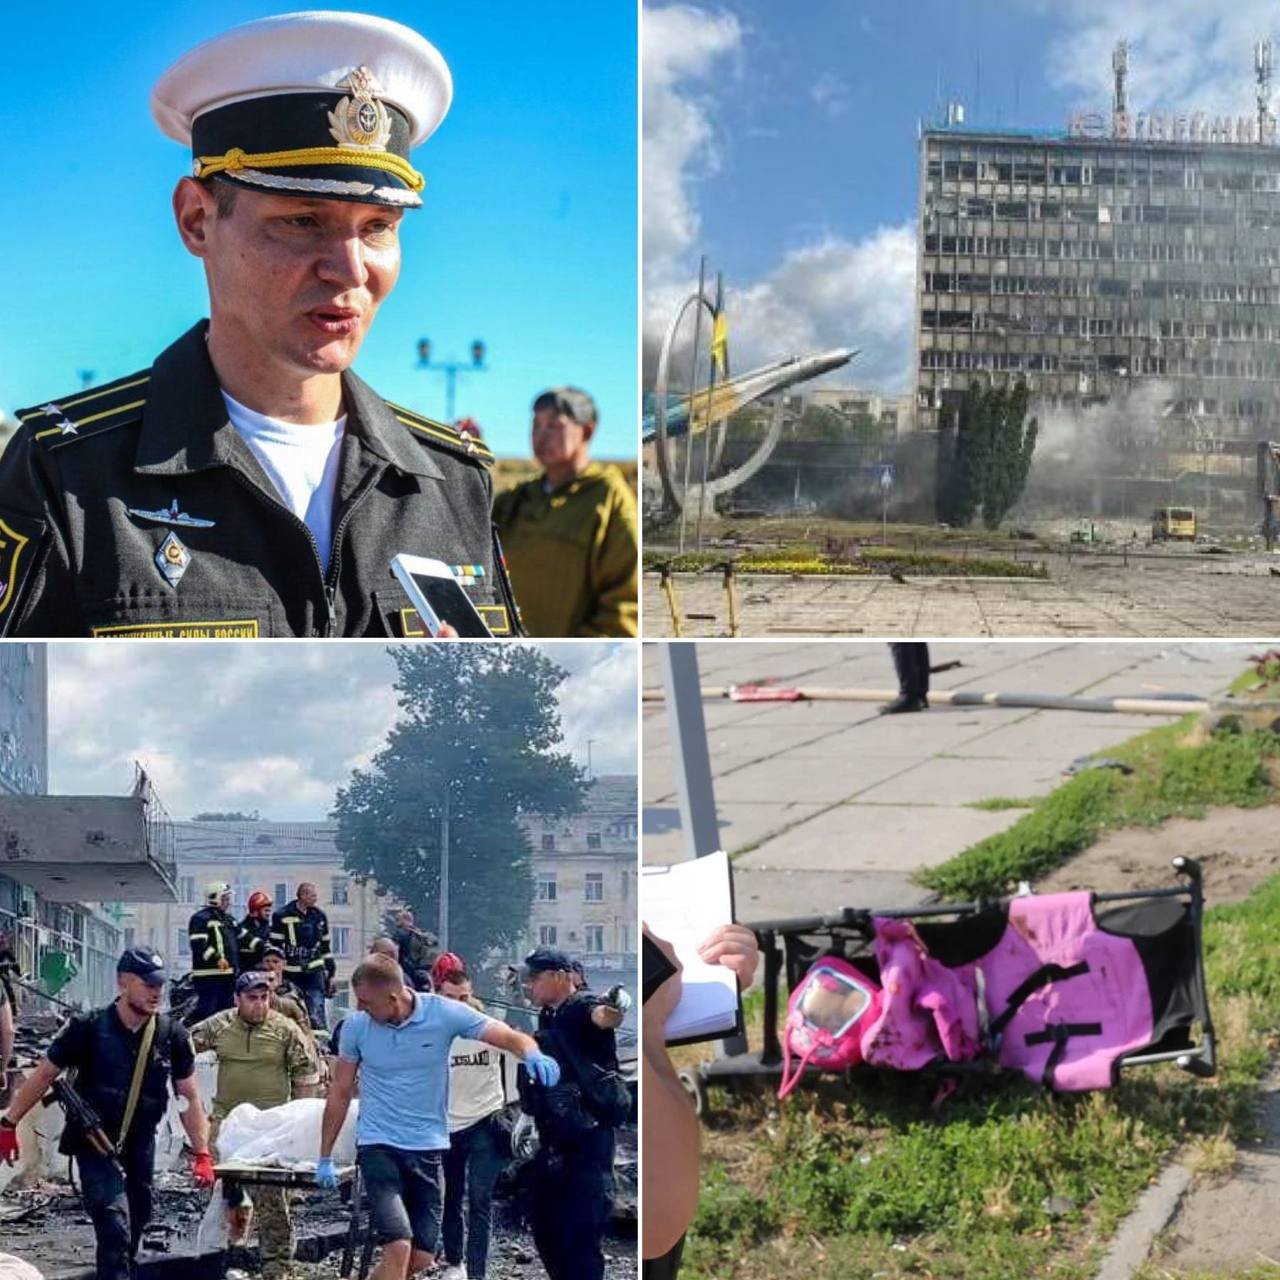 Reggeli kocogása közben végezték ki az orosz parancsnokot, aki 23 ukrán civil haláláért volt felelős